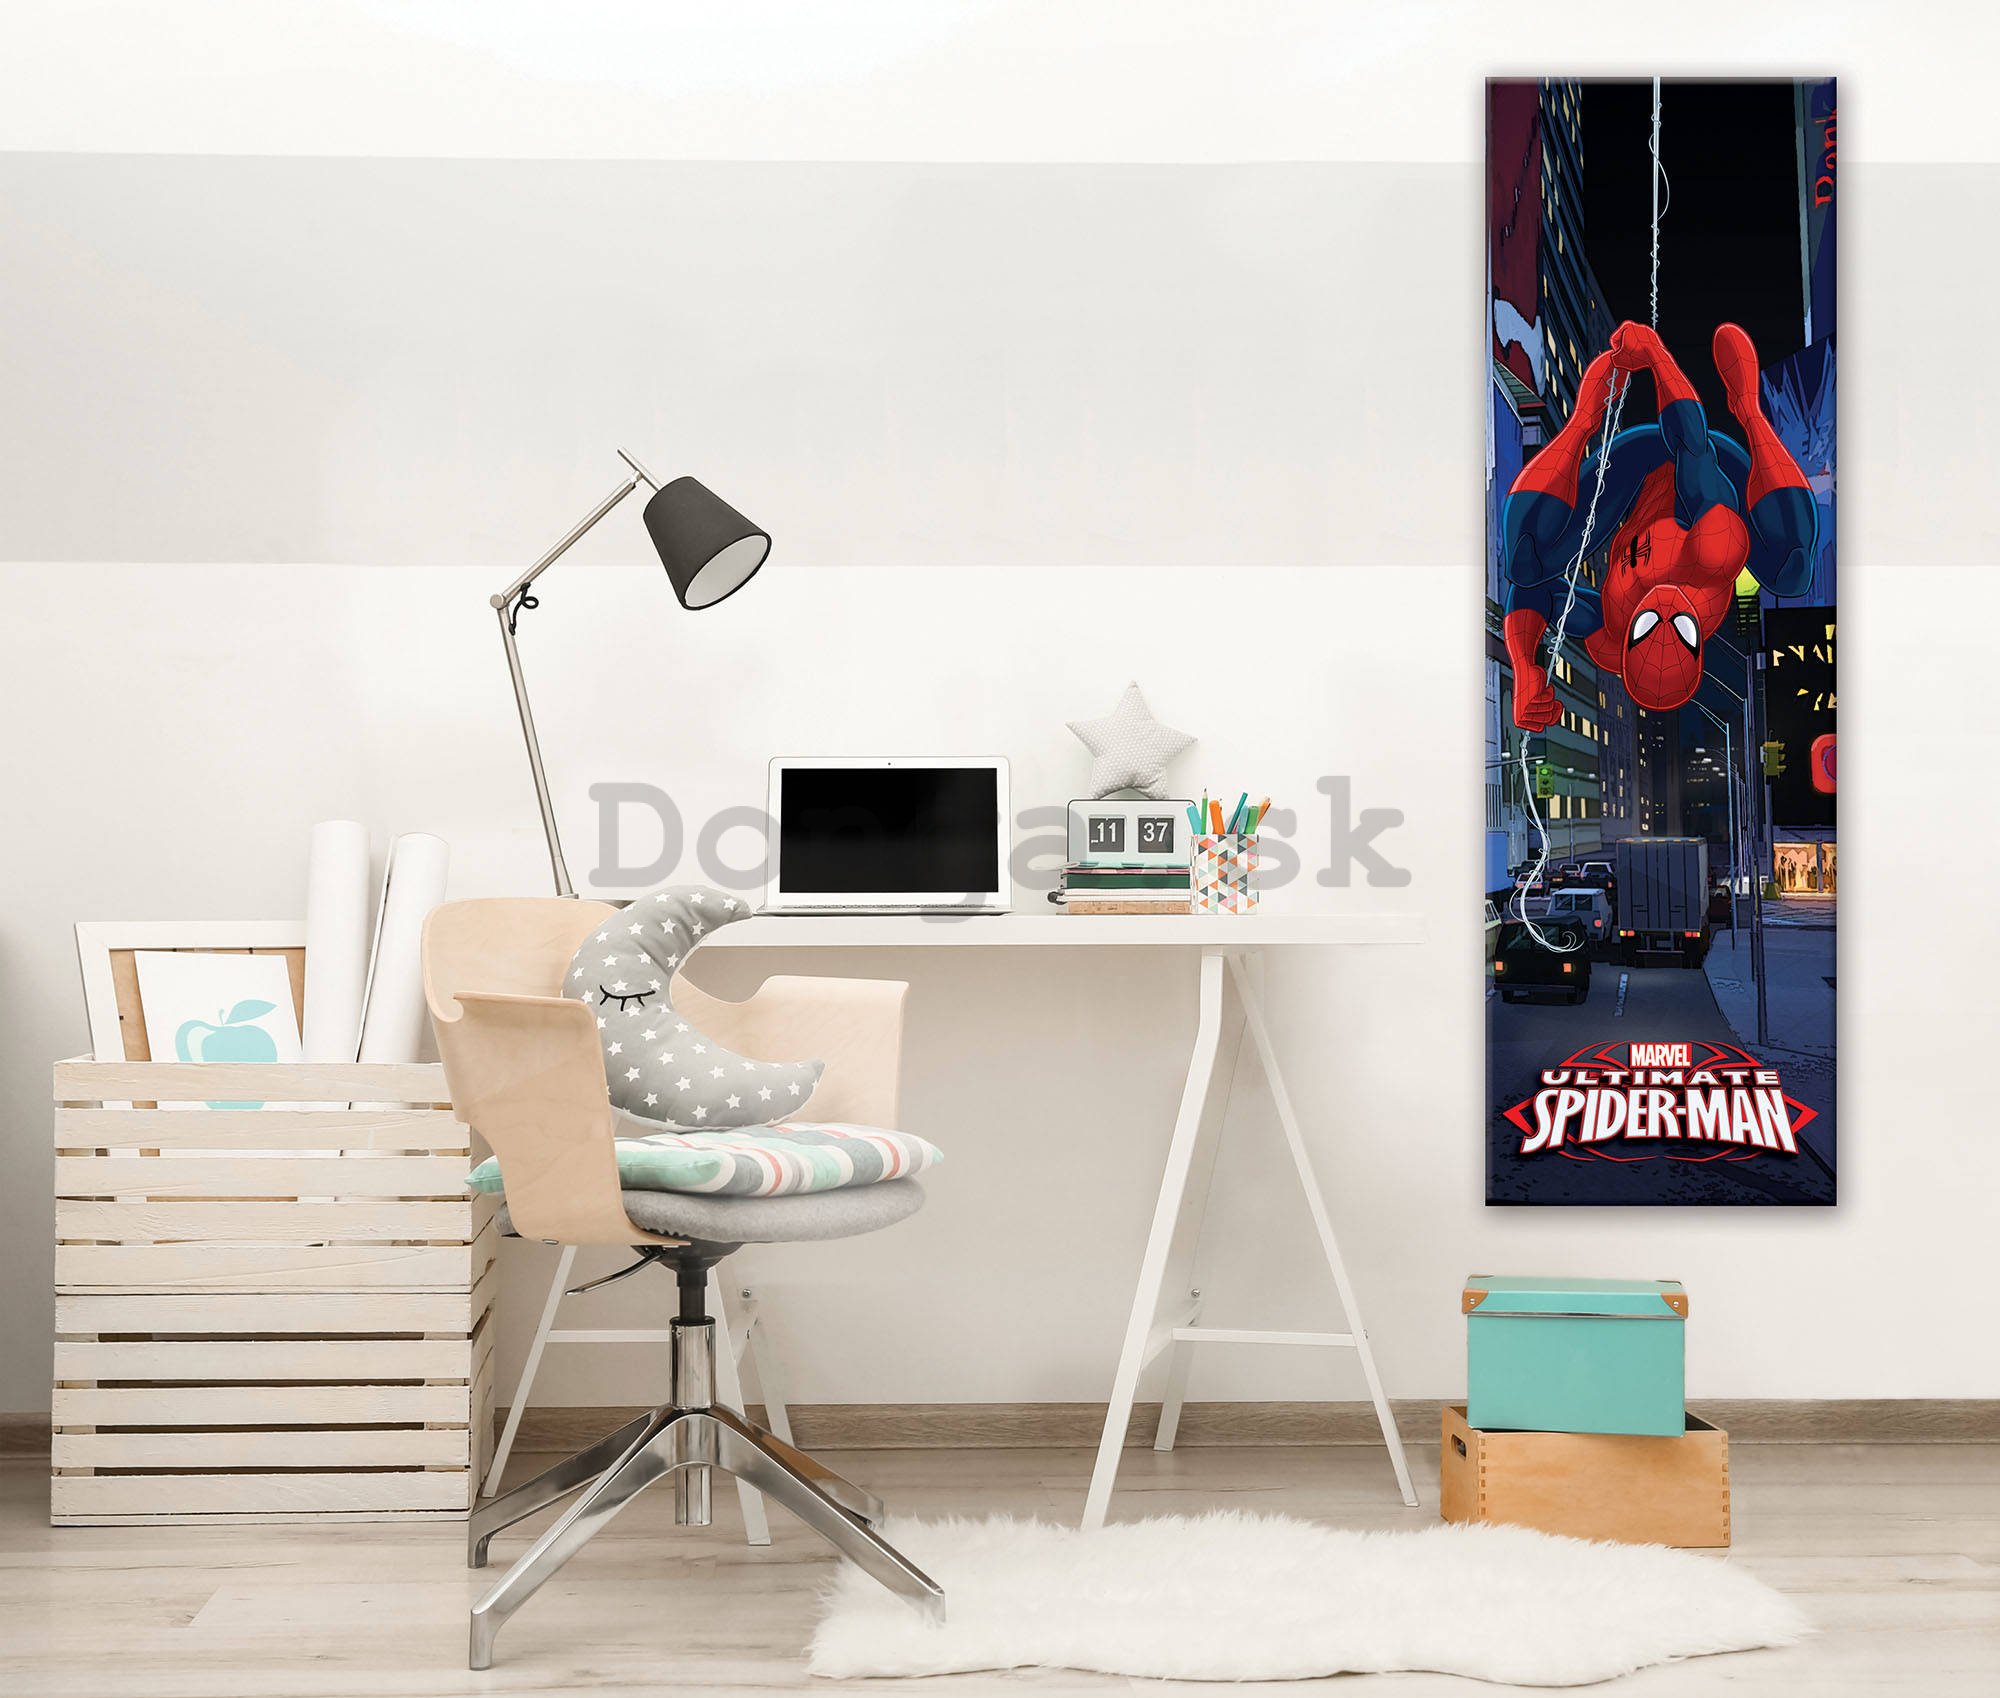 Obraz na plátne: Marvel Ultimate Spiderman - 45x145 cm